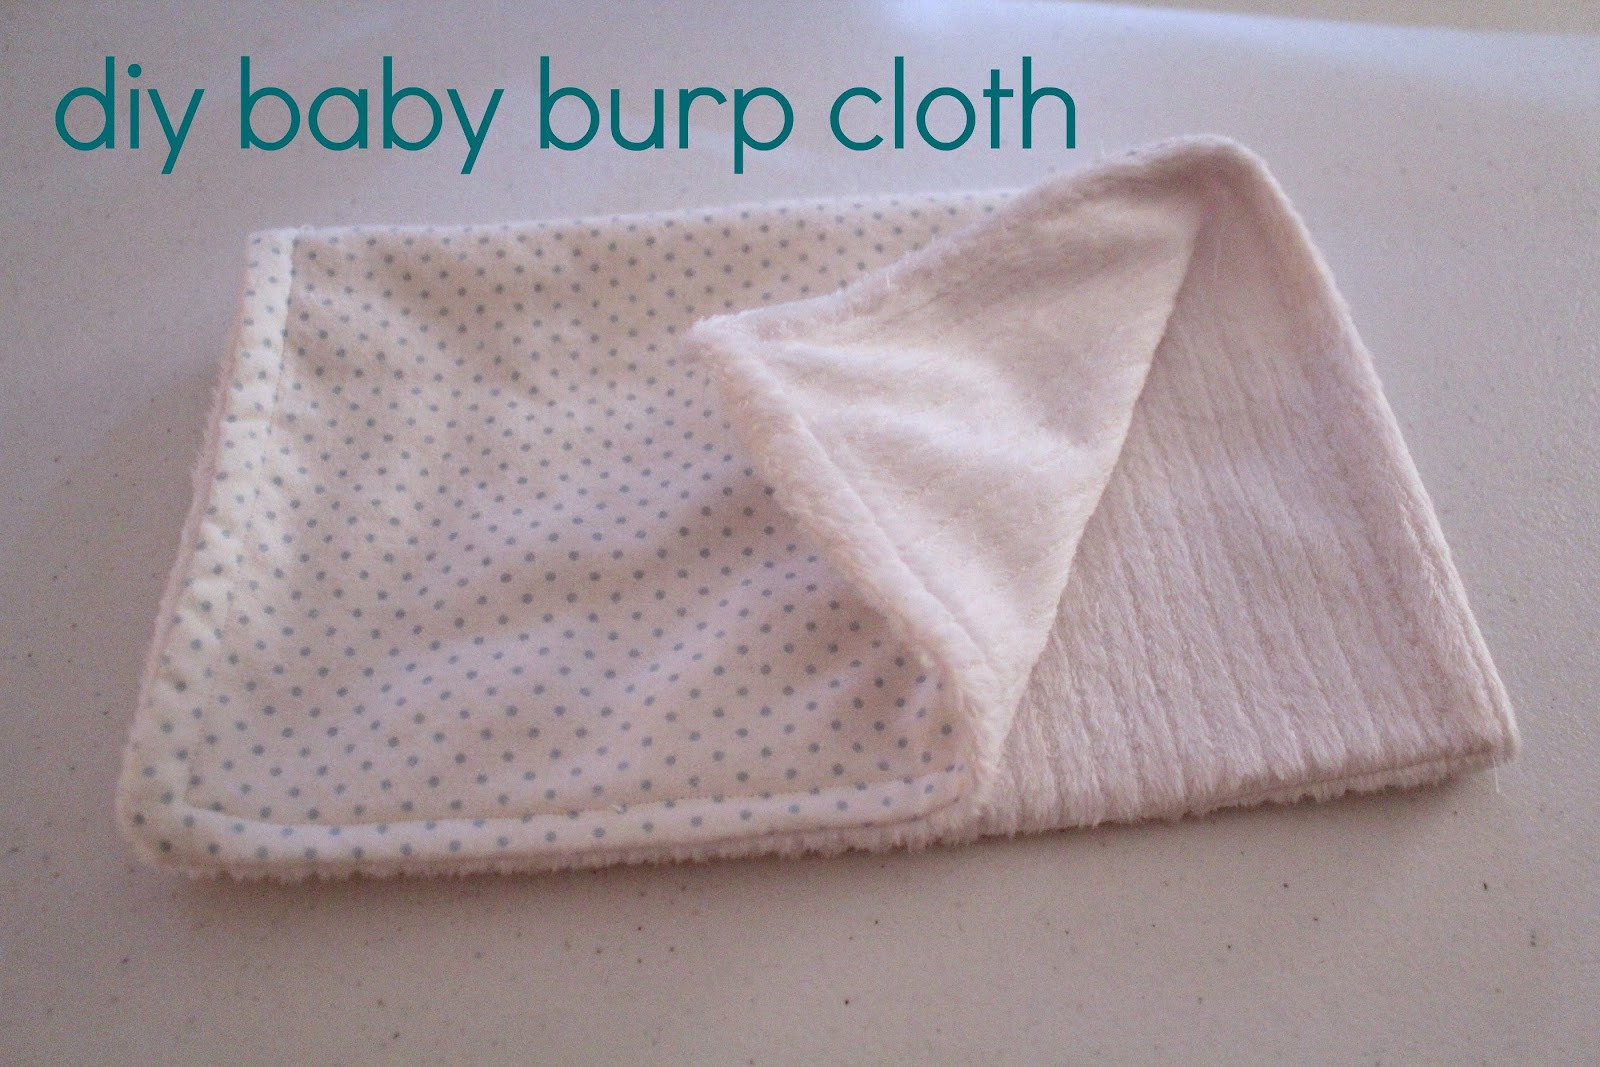 Baby Burp Cloth DIY
 Ten June DIY Baby Burp Cloth